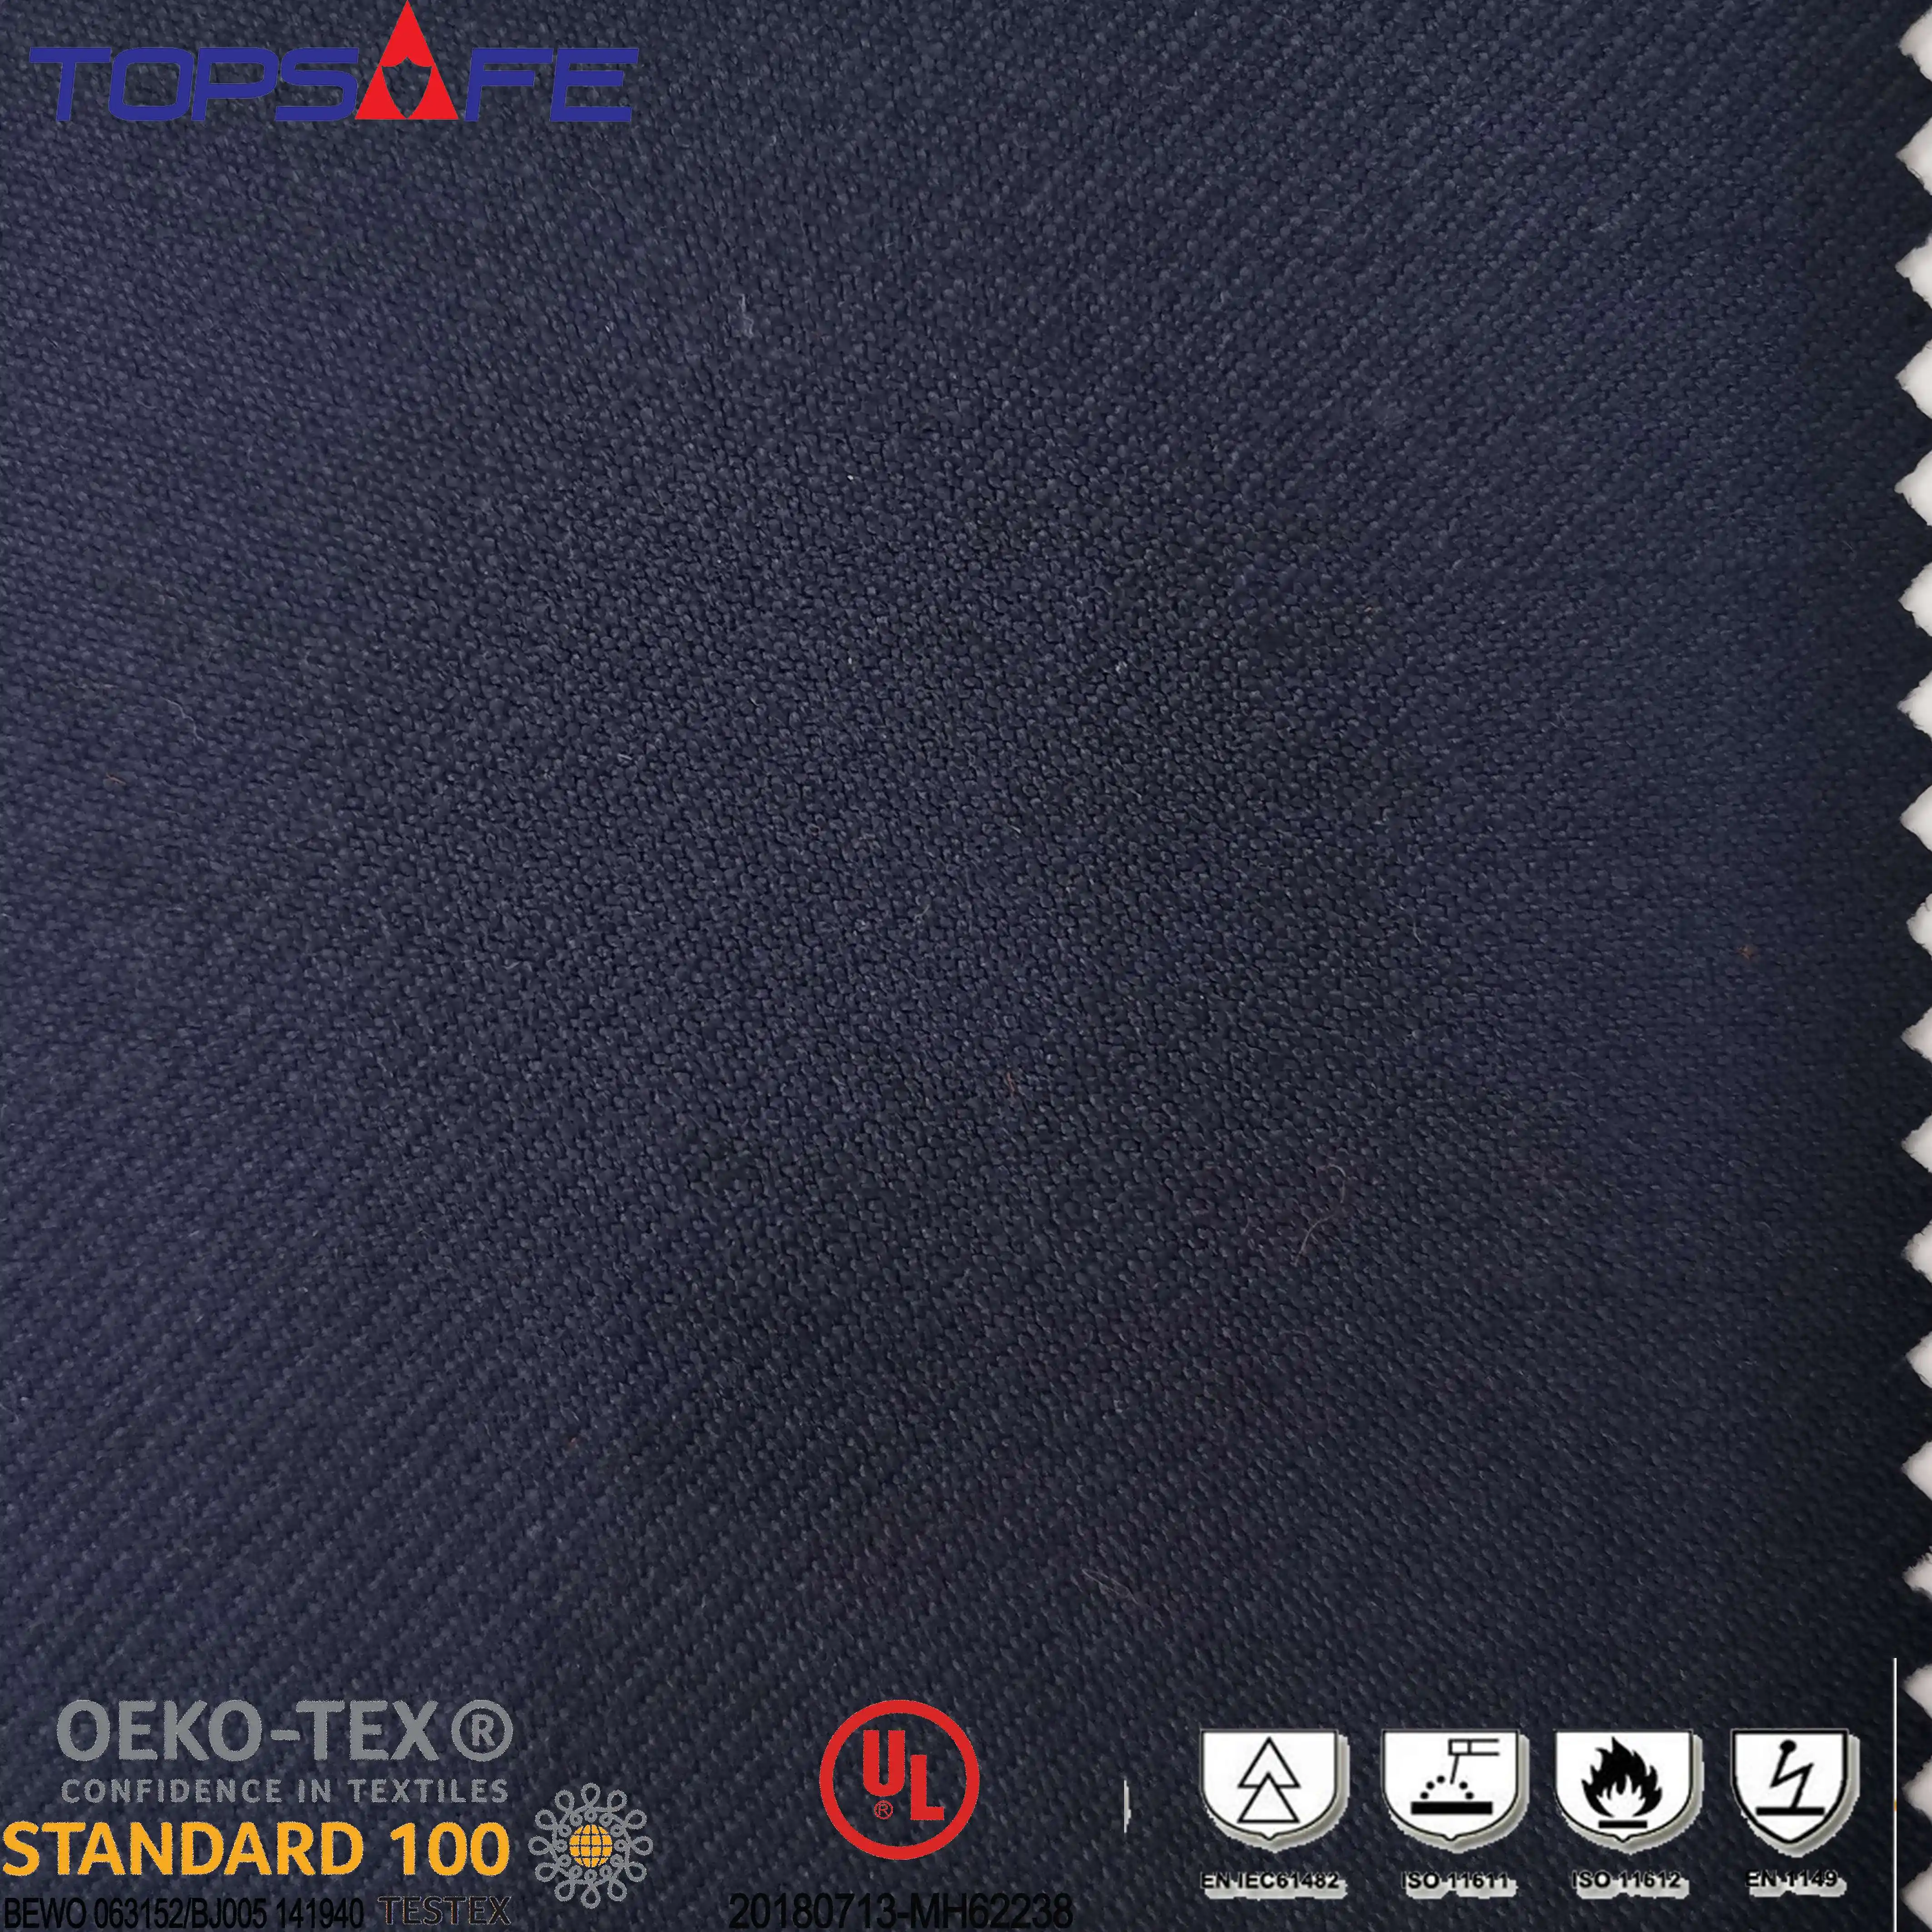 लोकप्रिय धातु छप संरक्षण nomex aramid की lenzing कपड़े workwear के लिए